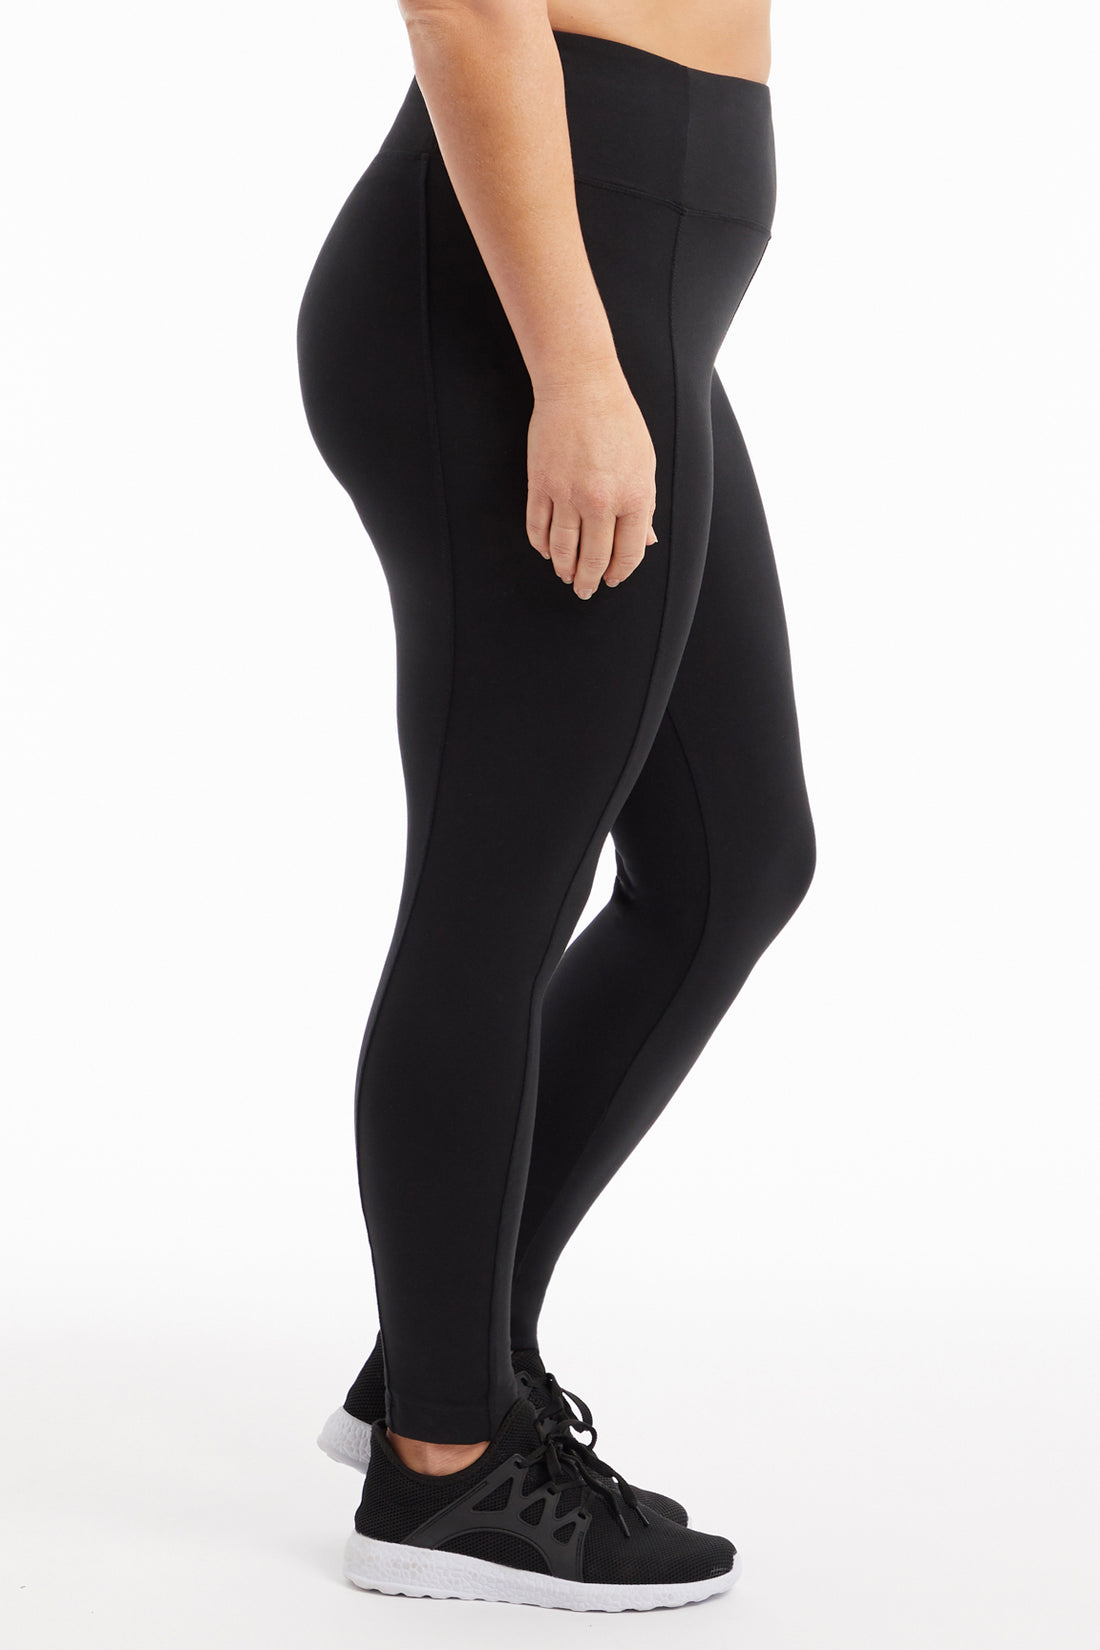 Marsha- Plus Size Performance Capris Black